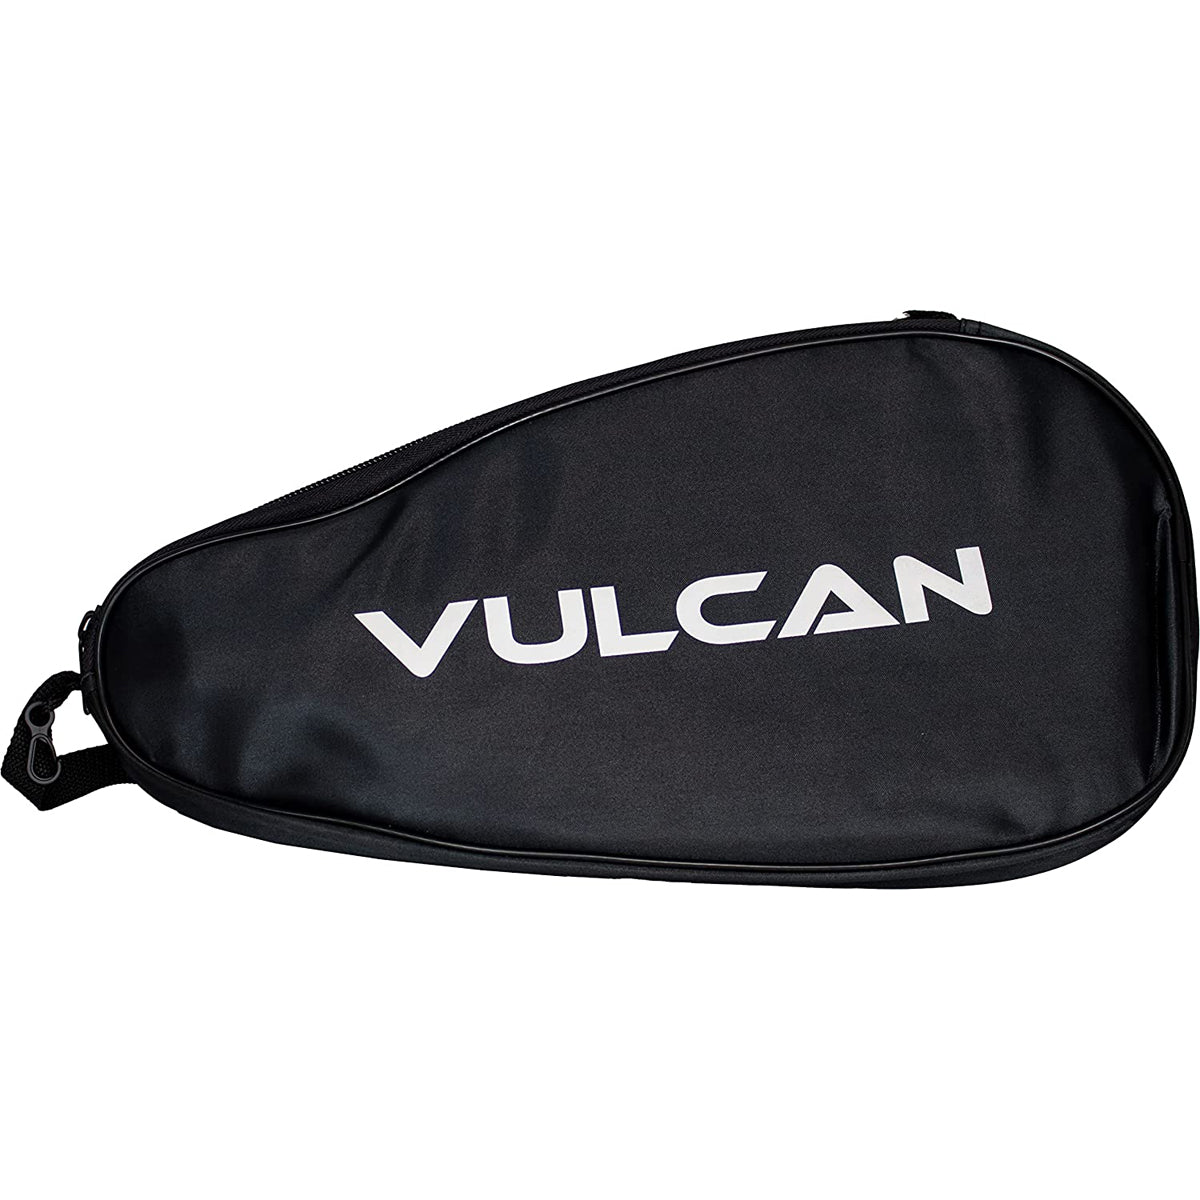 Vulcan Pickleball Paddle Bag - Black Vulcan